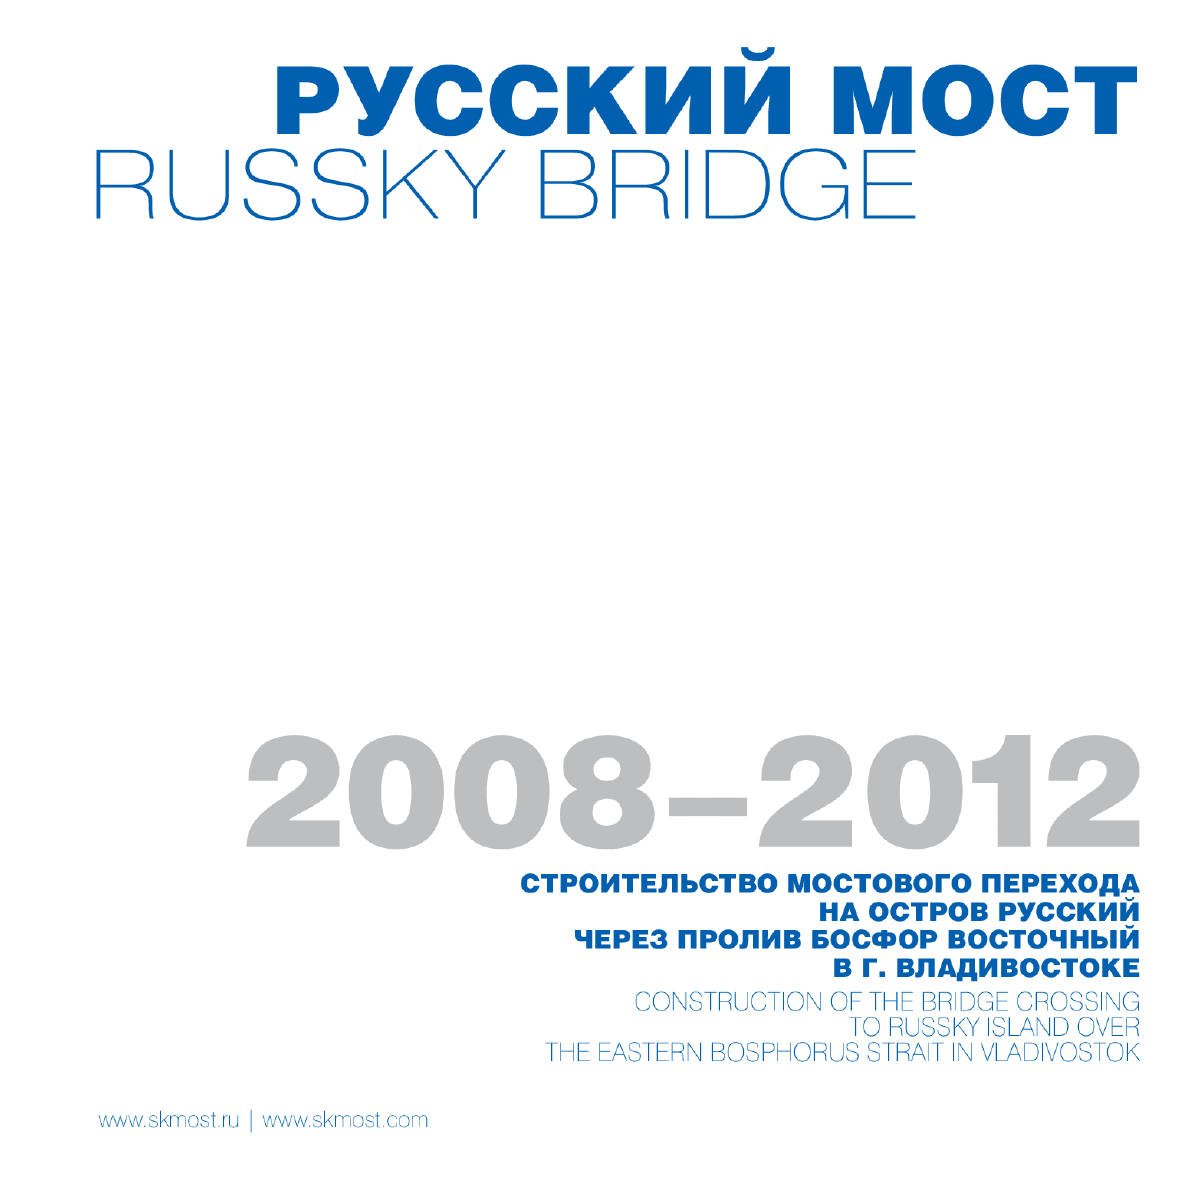 俄罗斯岛大桥施工介绍